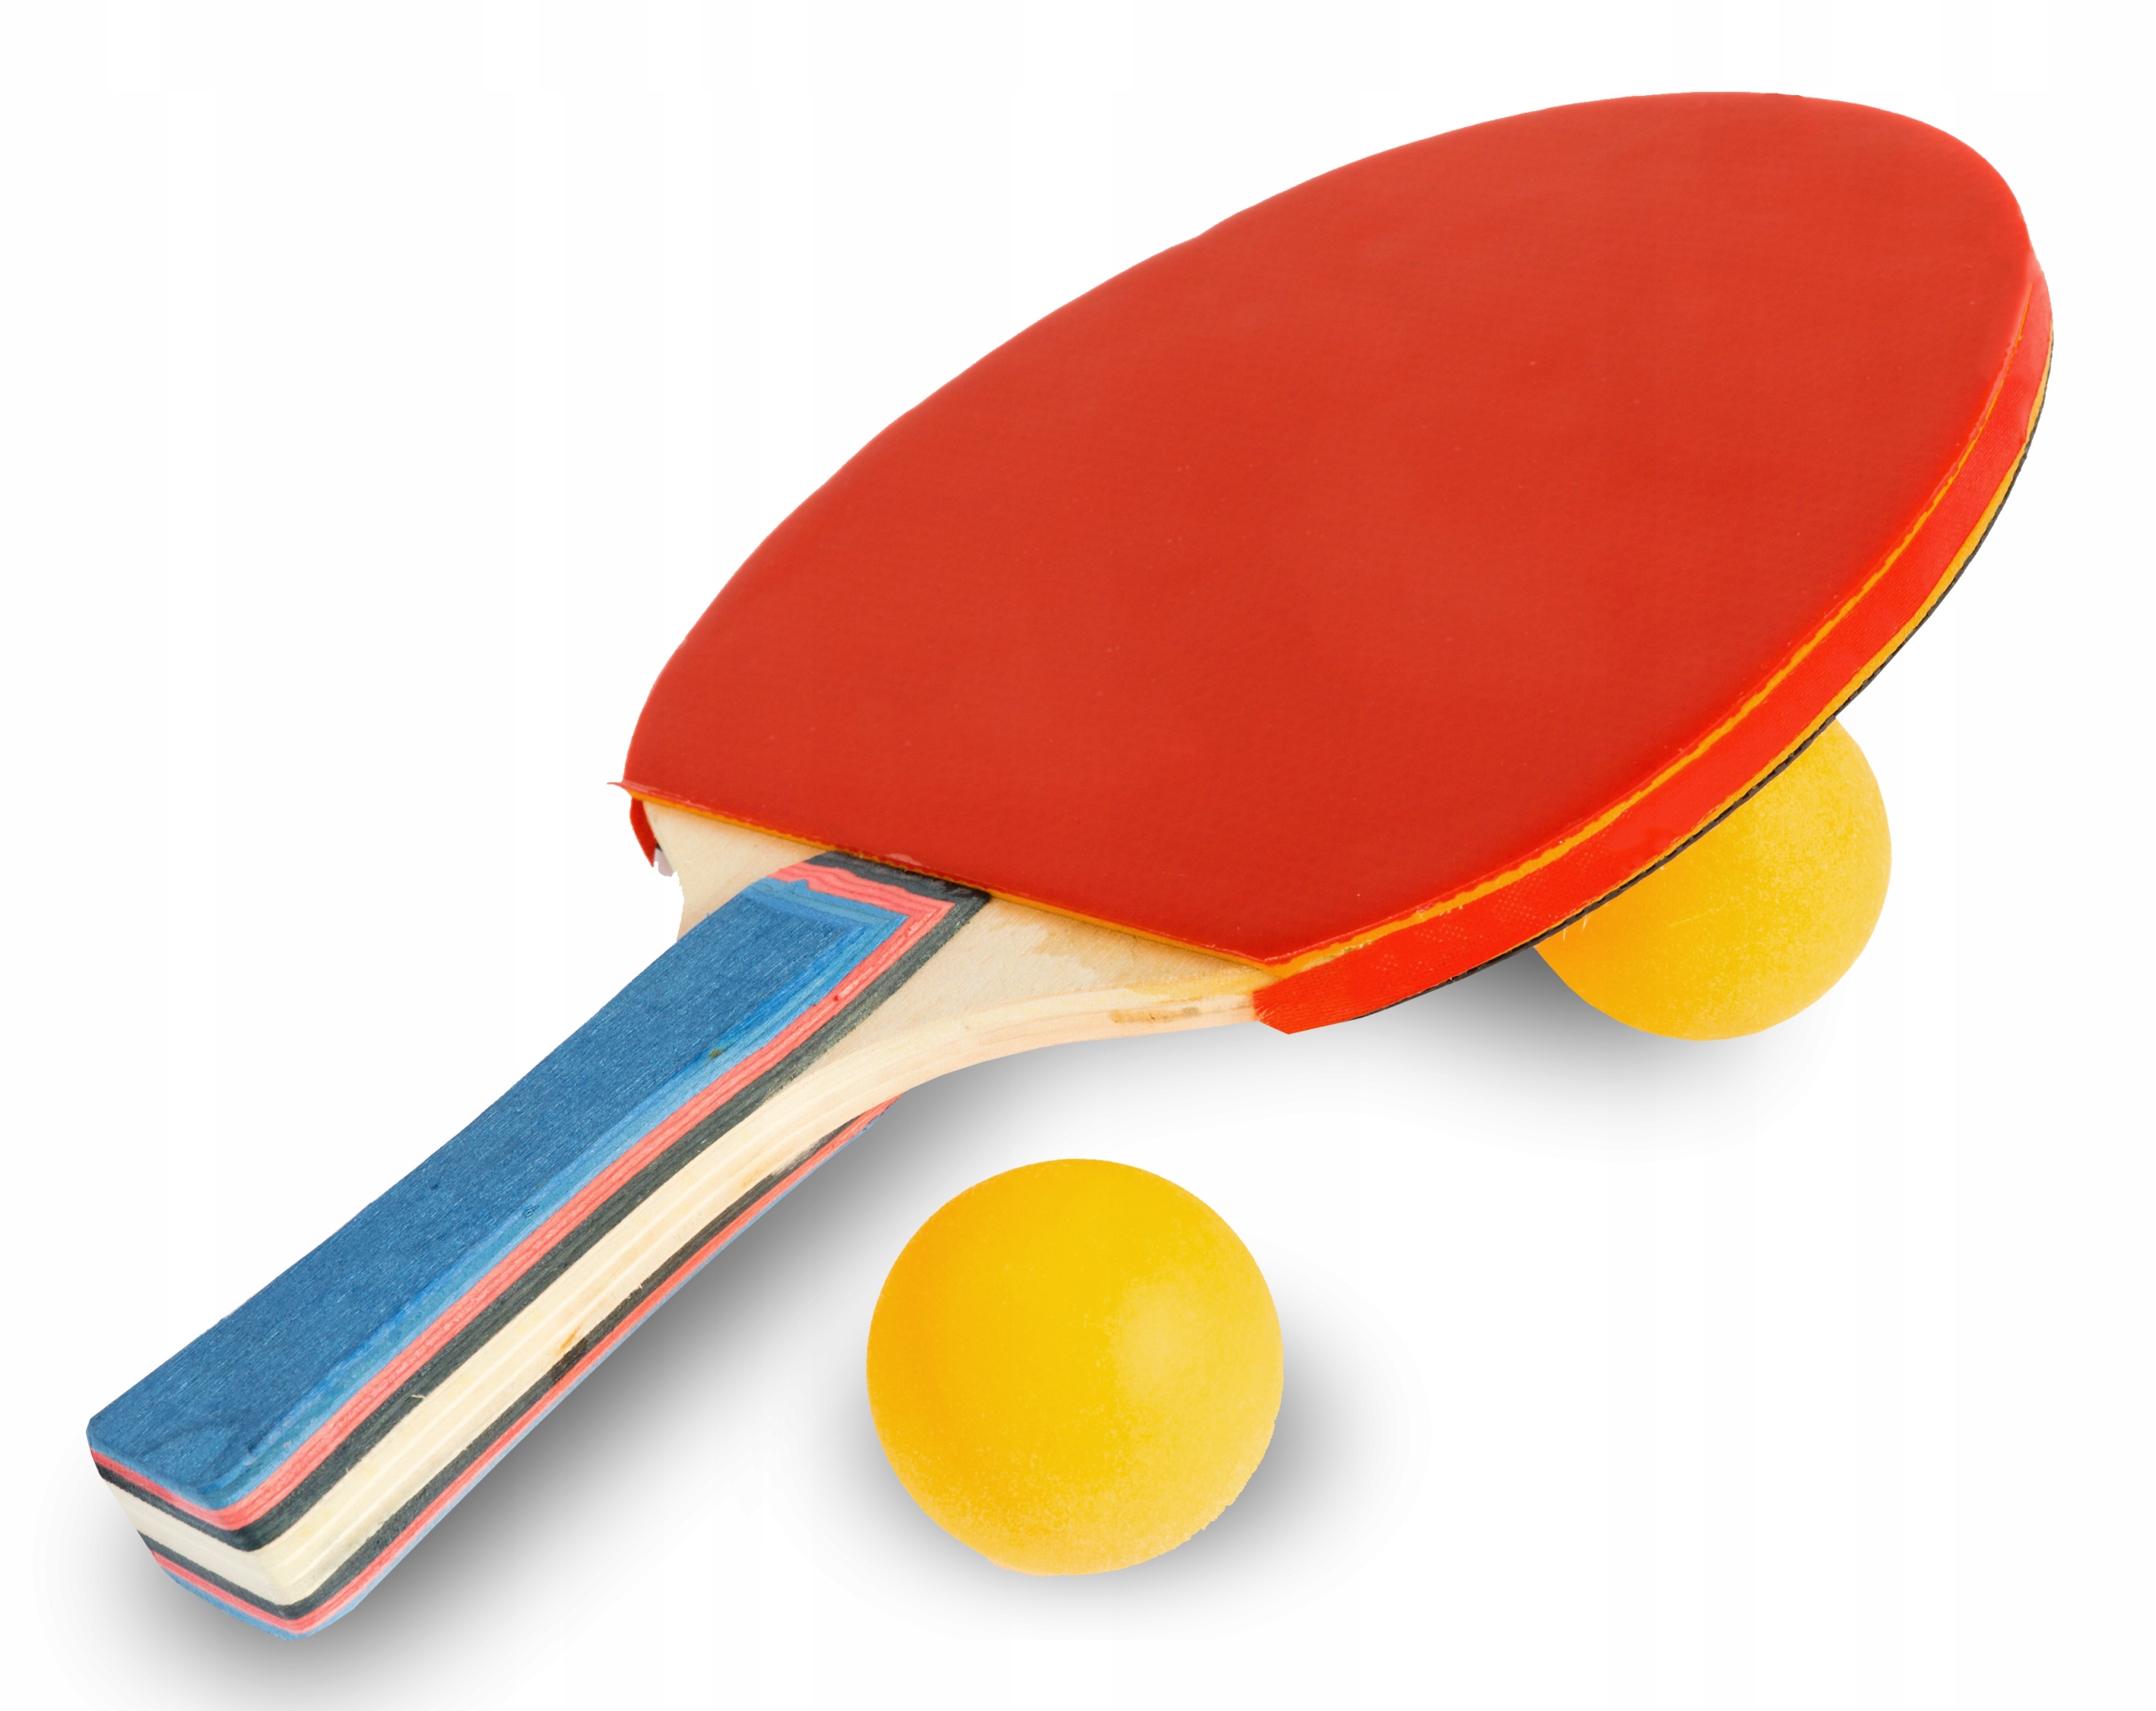 2 ракетки для настольного тенниса. Deex настольный теннис 2 ракетки мячик. Darvish / настольный теннис (2 ракетки + 4 мяча). Stiga мячи для настольного тенниса. Ракетка для пинг понга вектор.